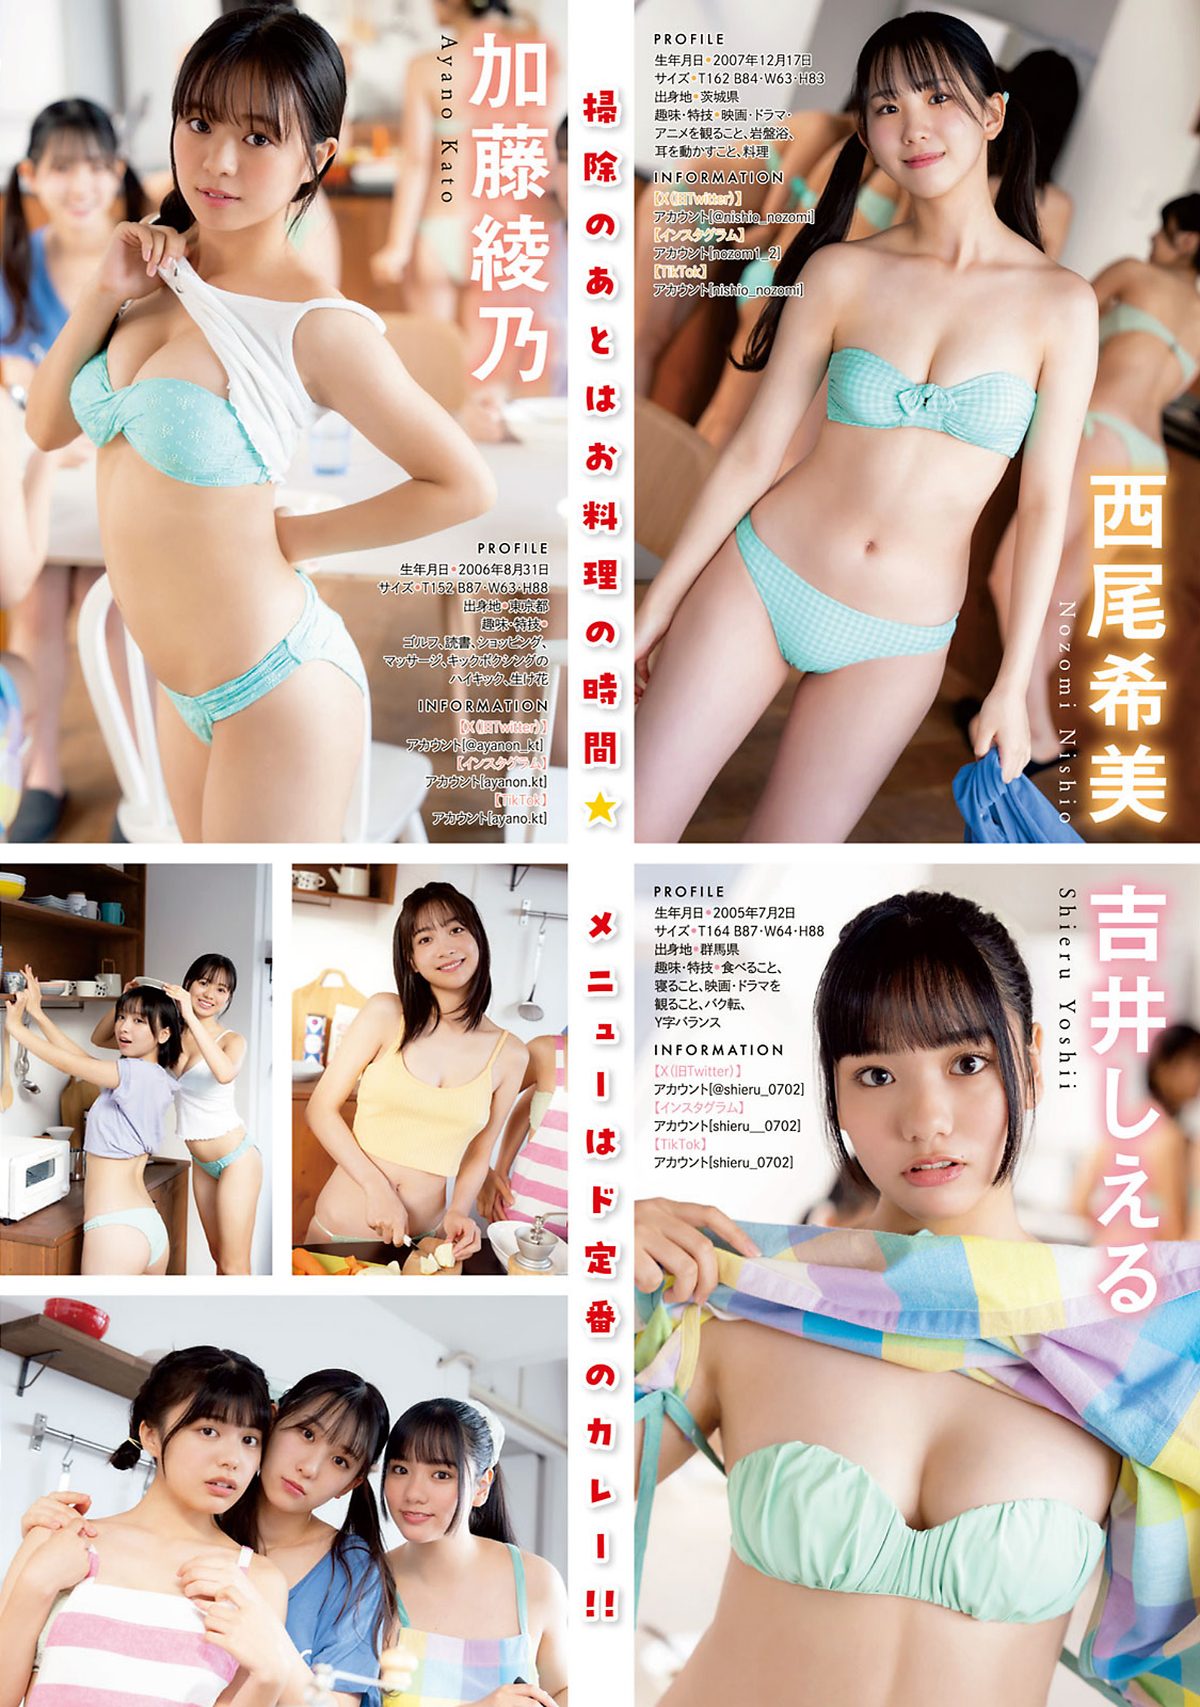 Young Magazine 2024 No 04 05 Maya Imamori 今森茉耶 0006 1480592542.jpg